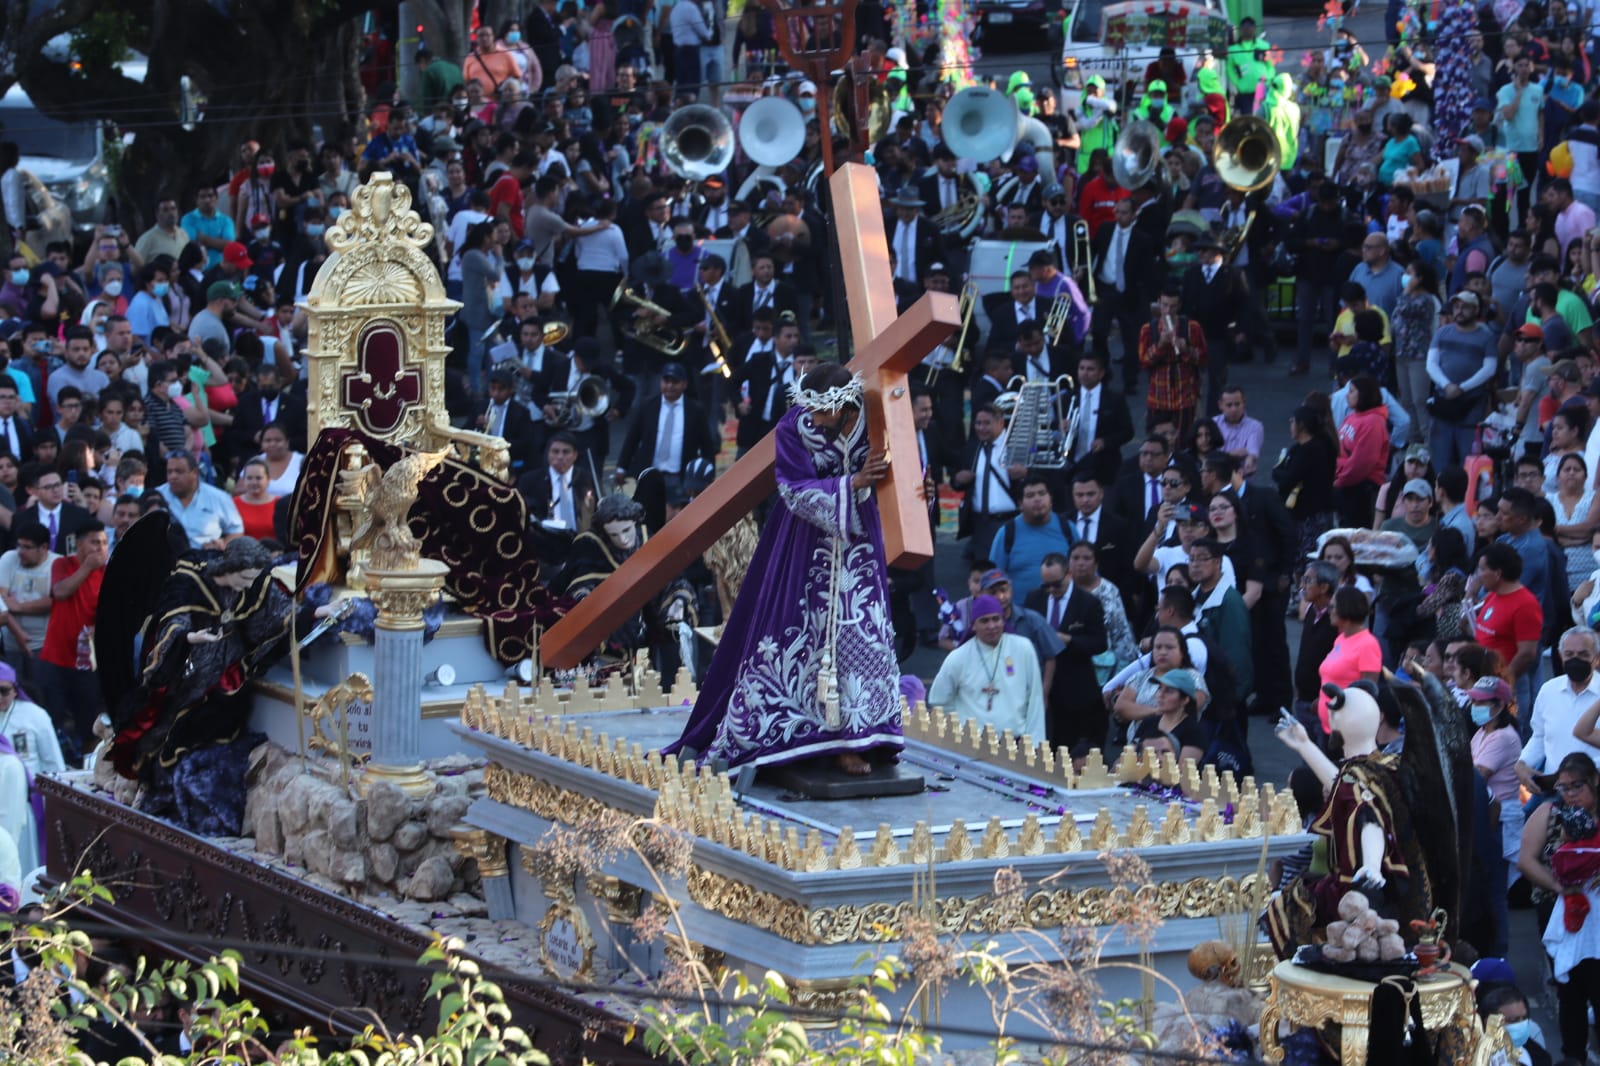 Las procesiones de Guatemala atraen a miles de fieles católicos y a decenas de turistas que admiran la solemnidad de sus recorridos. (Foto Prensa Libre: Élmer Vargas)